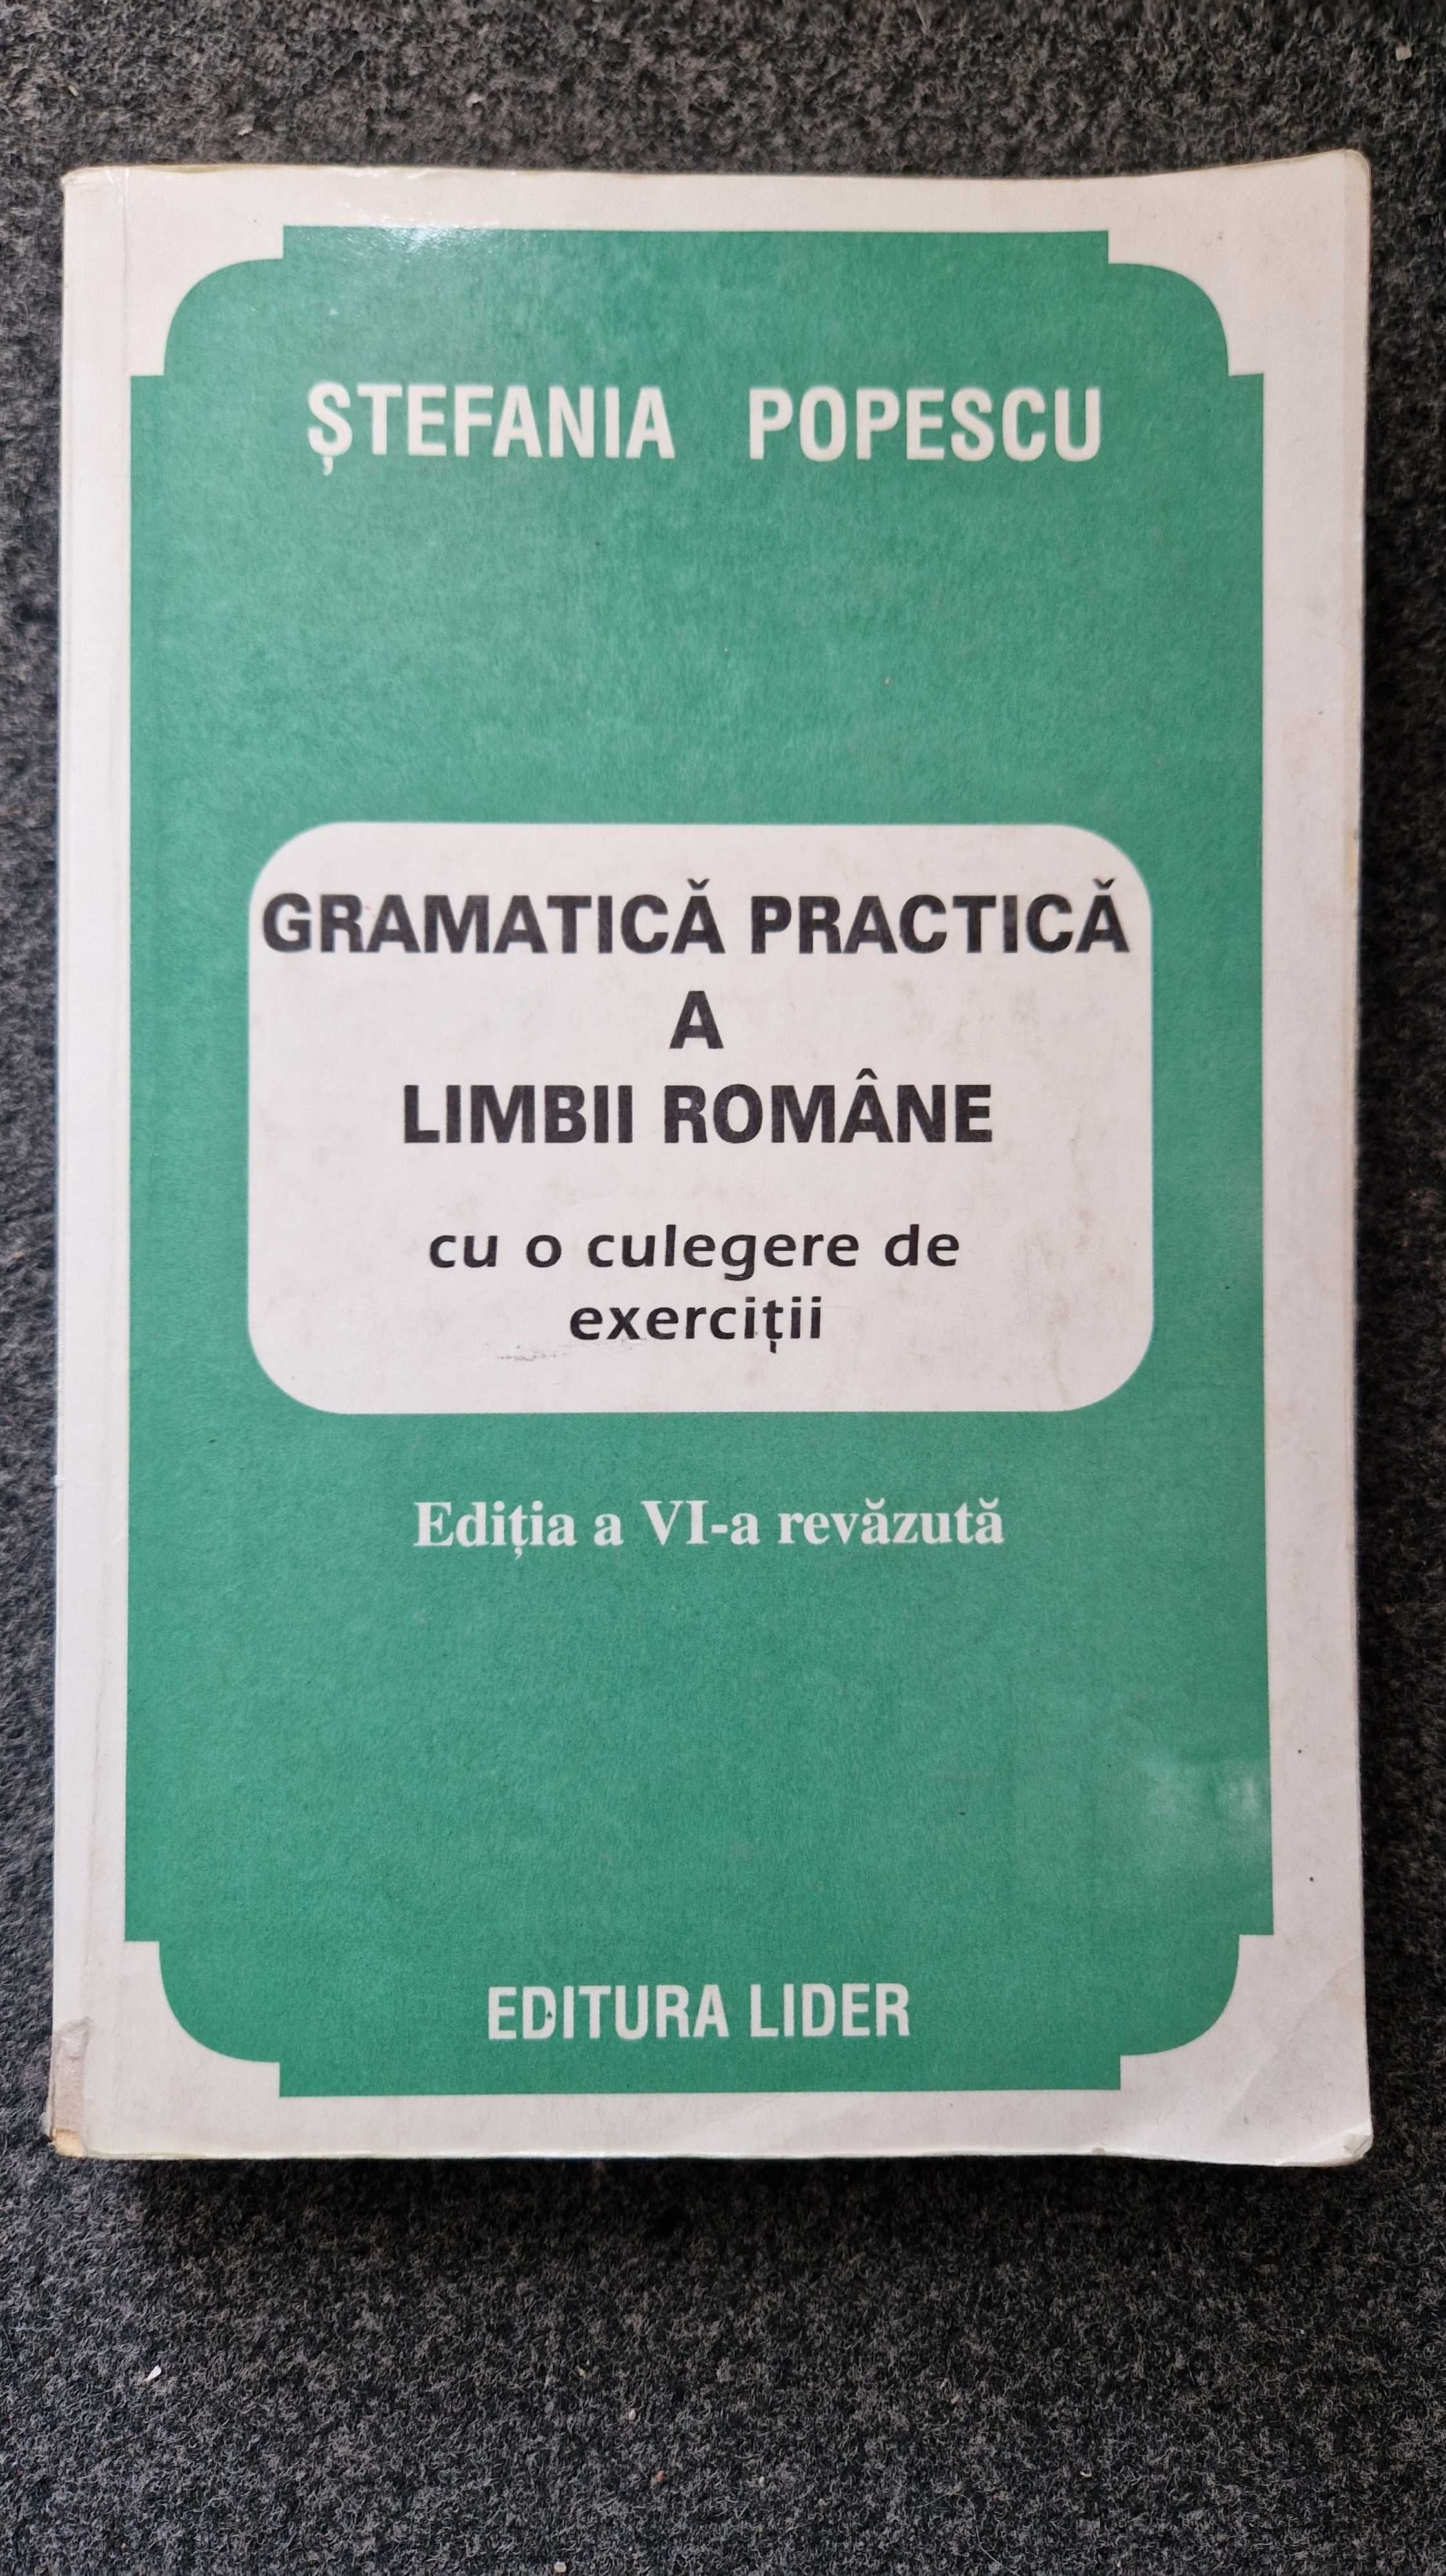 GRAMATICA PRACTICA a LIMBII ROMANE - Stefania Popescu (ed Orizonturi)